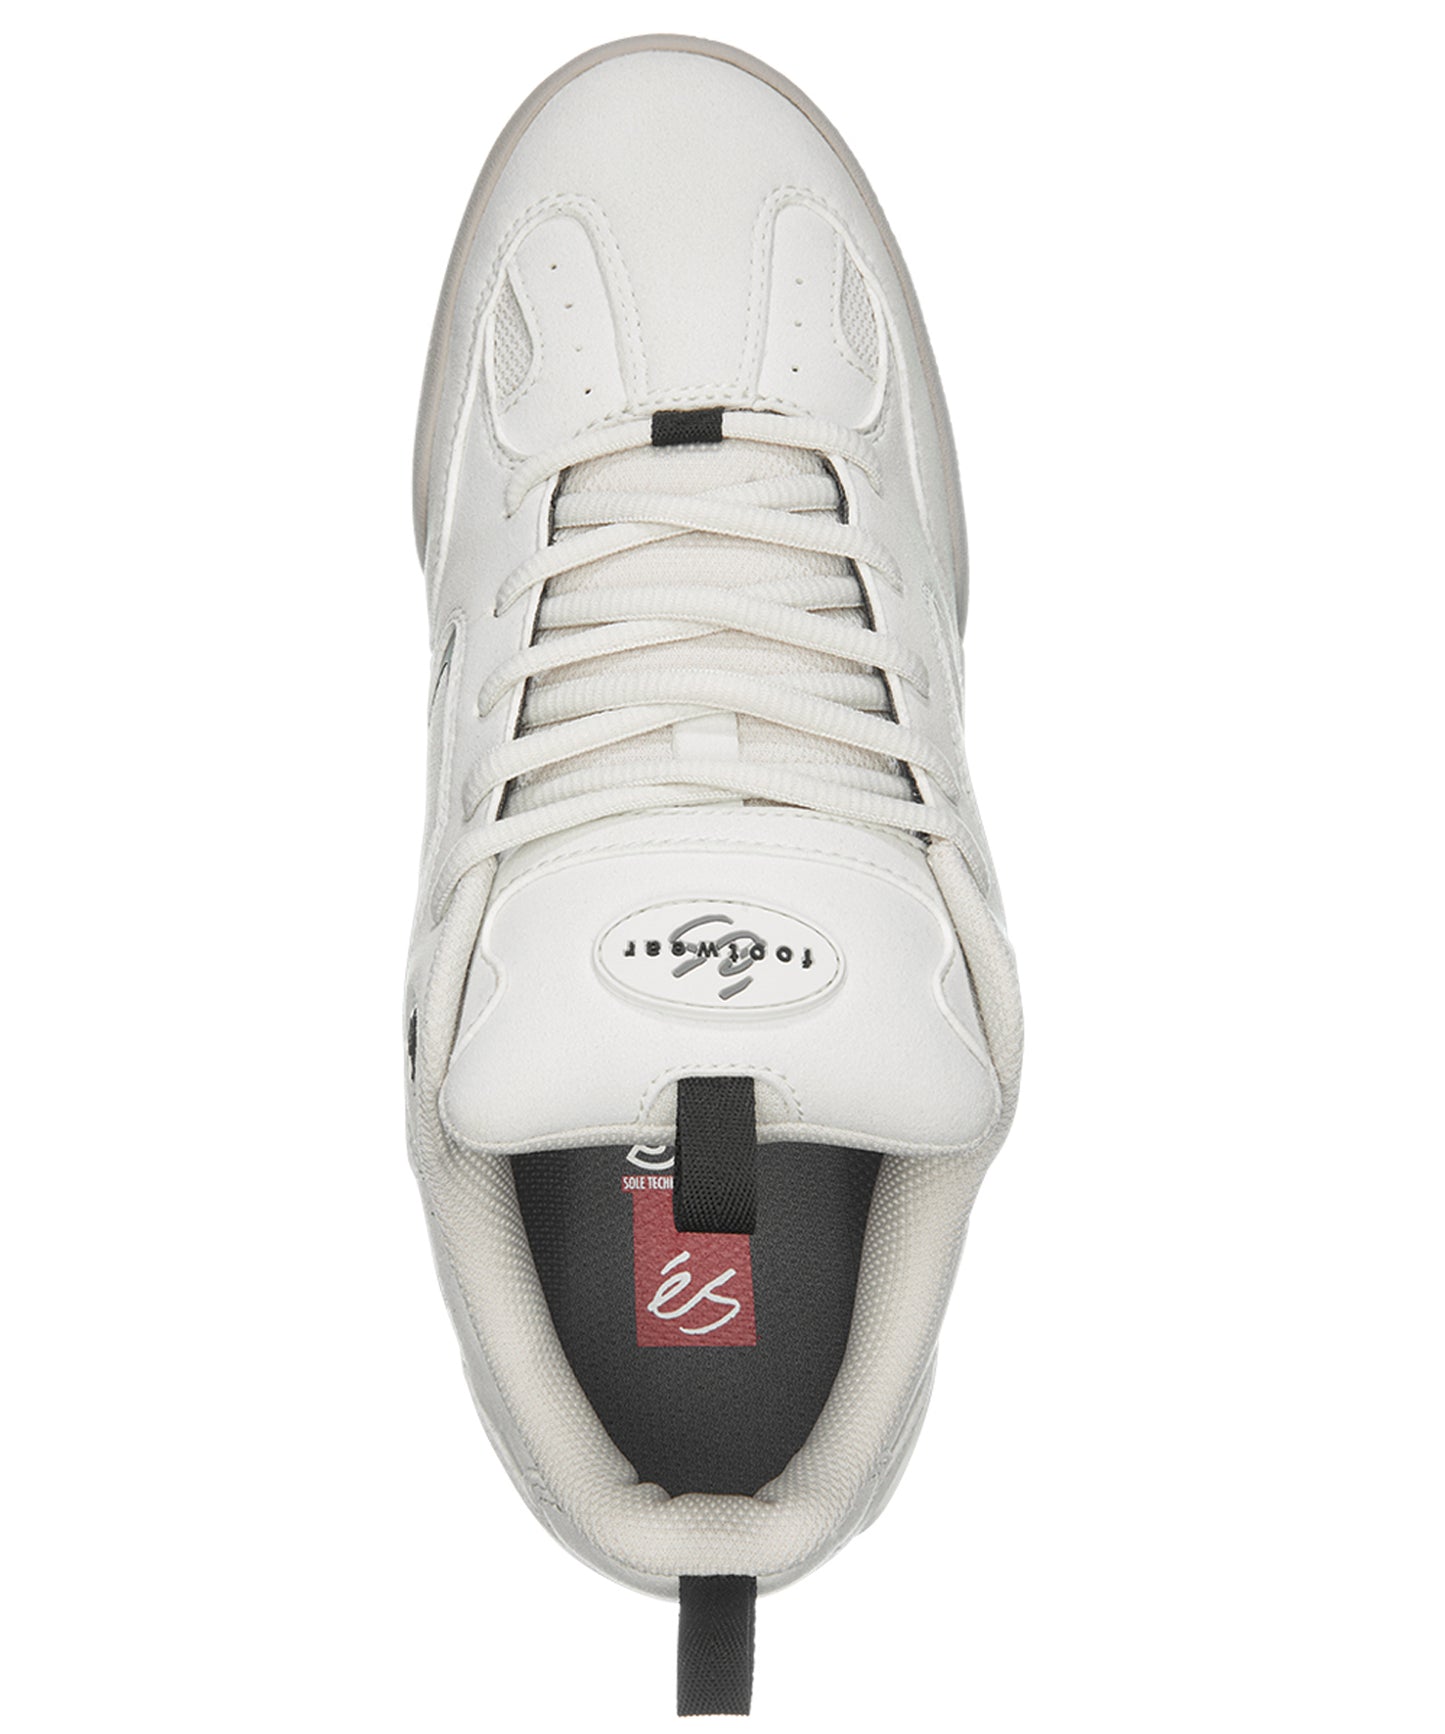 és-zapatillas-quattro-white-la zapatilla de skate definitiva-suelas y lengüeta de espuma-Suela de goma sti energy foam.